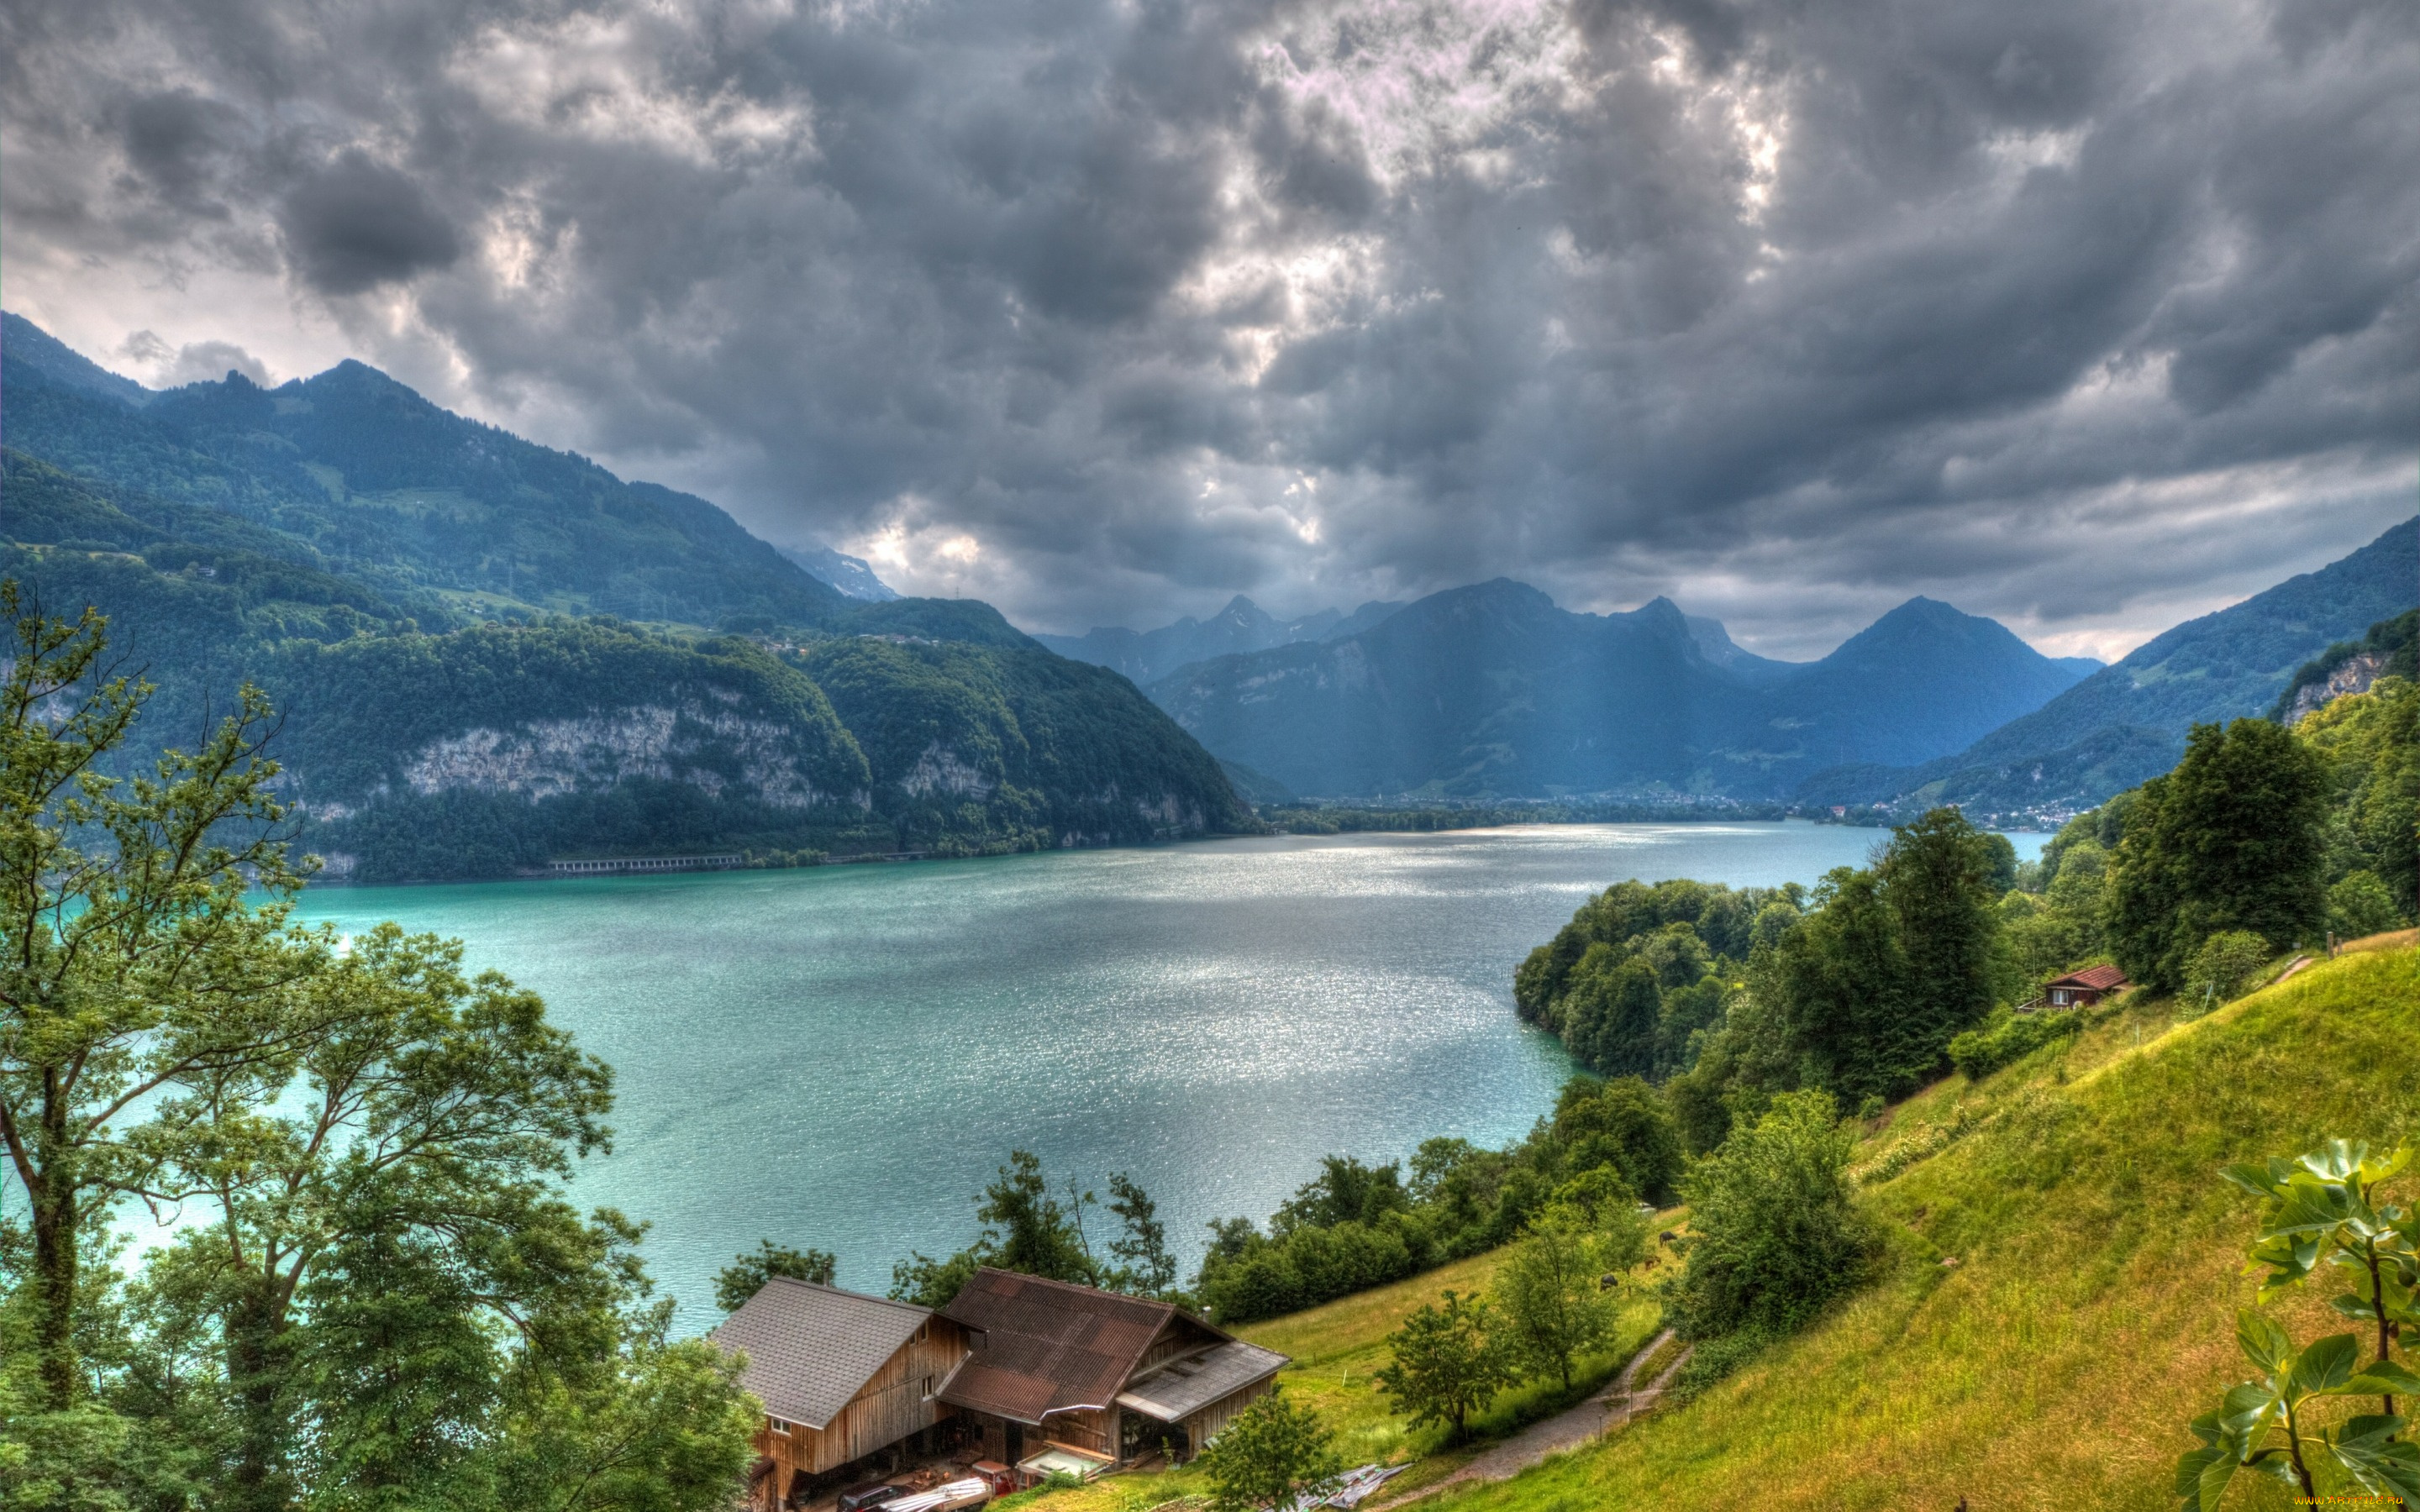 природа, реки, озера, lake, walensee, alps, switzerland, озеро, валензе, альпы, швейцария, горы, дома, деревья, облака